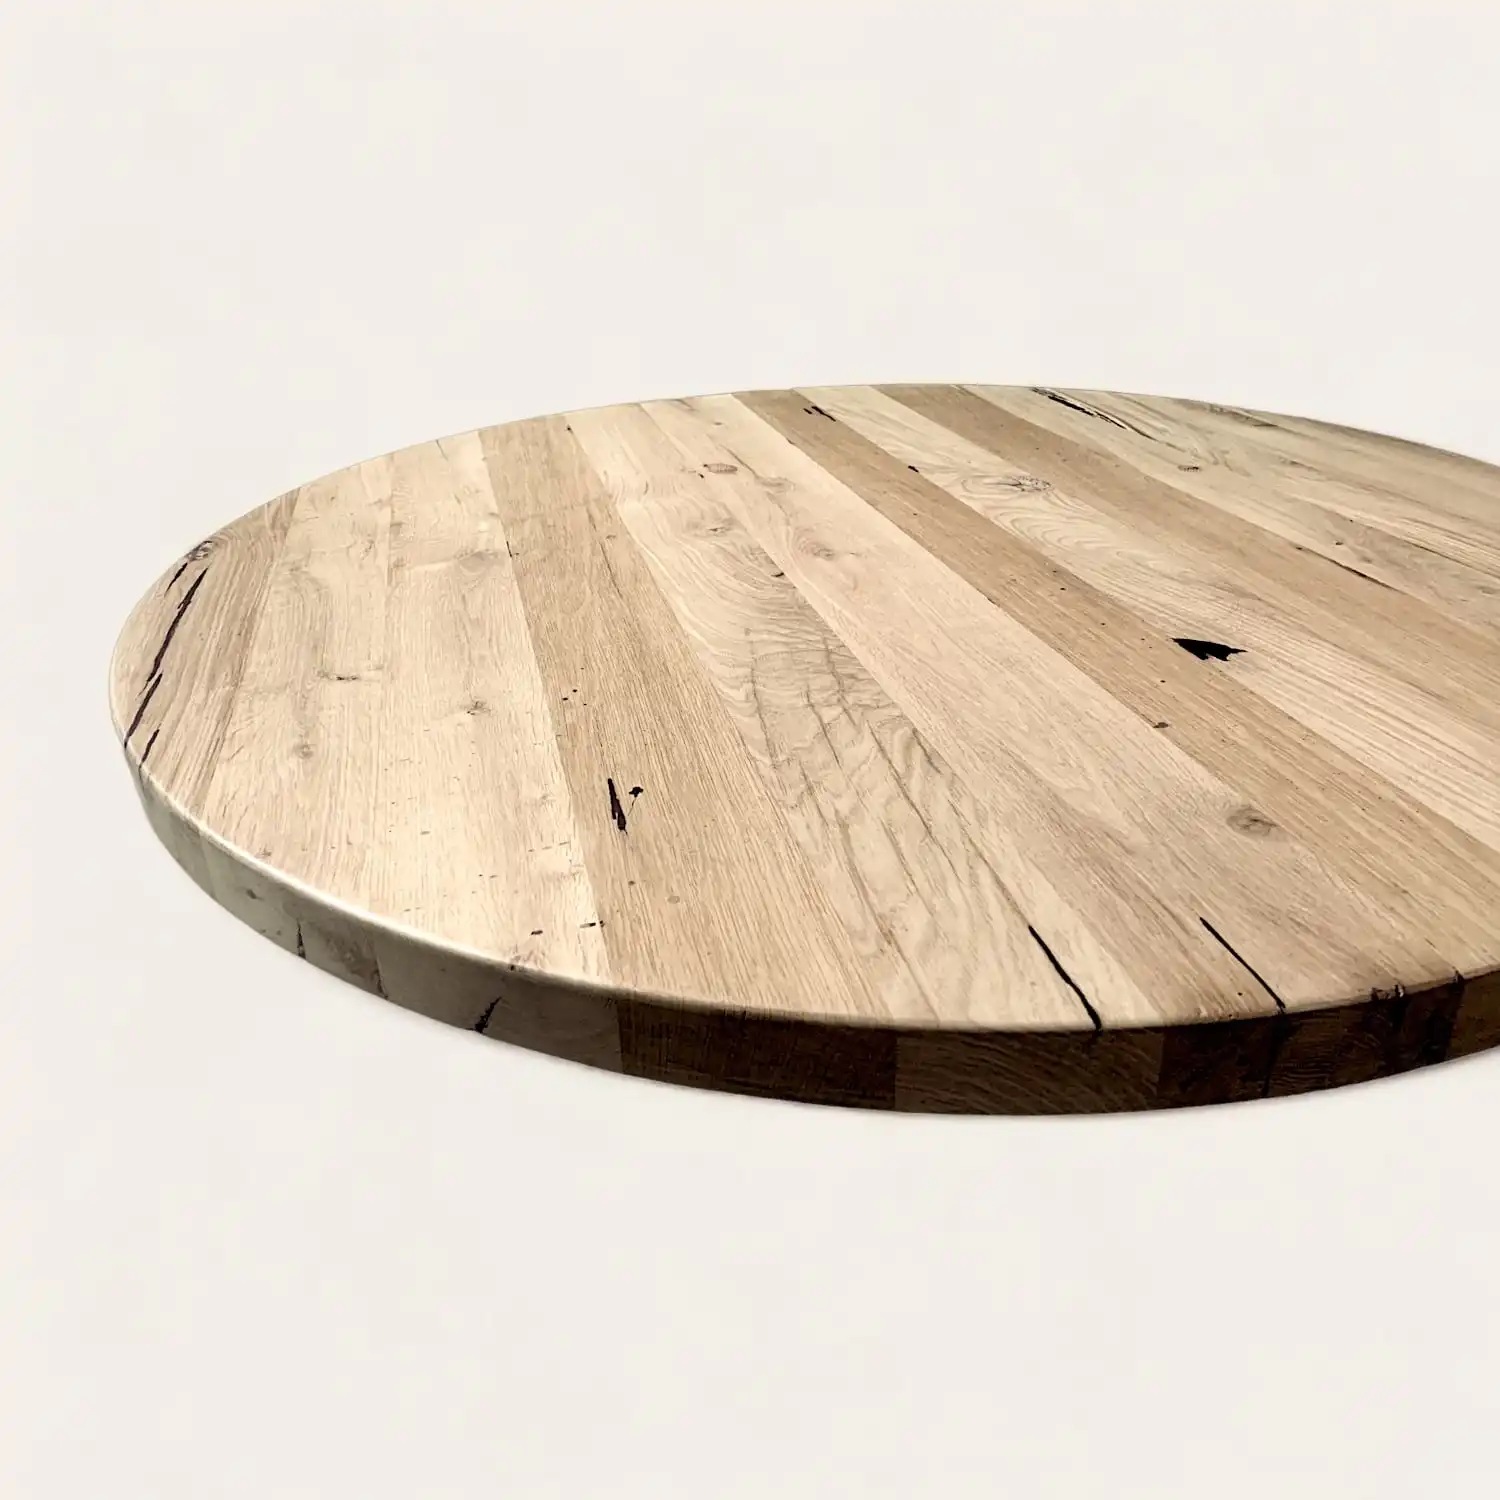  Un plateau de table rustique rond en bois sur fond blanc. 